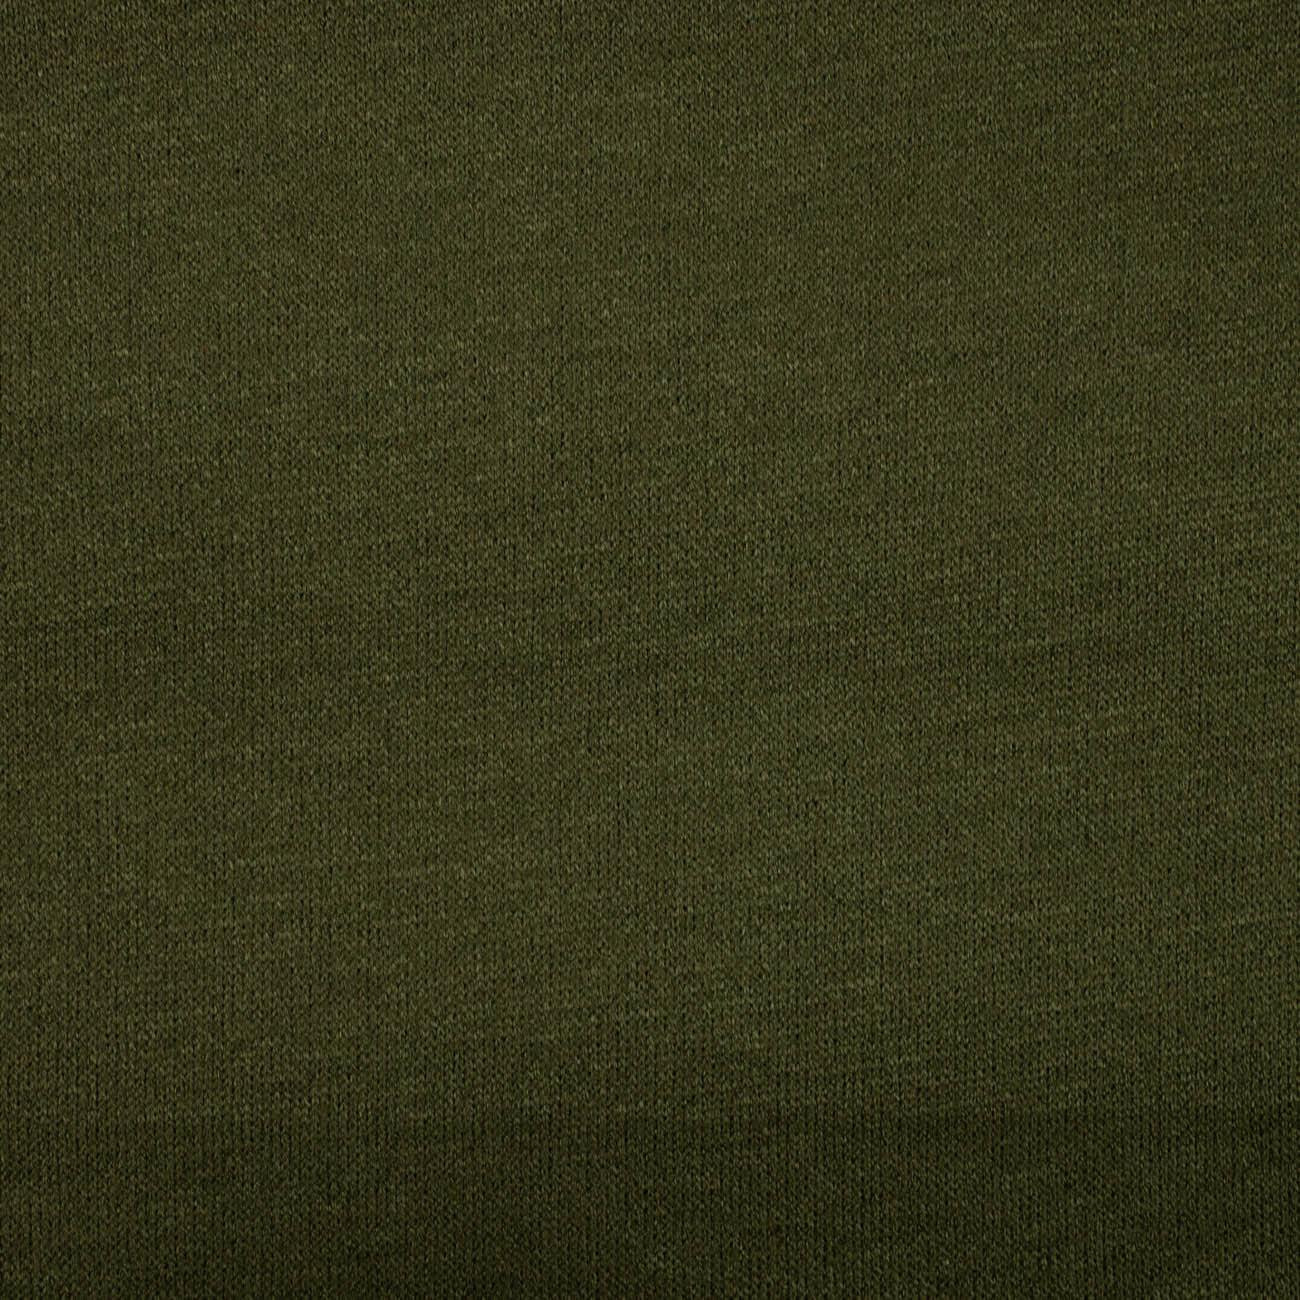 Oliwkowy - dzianina swetrowa gładka 345g